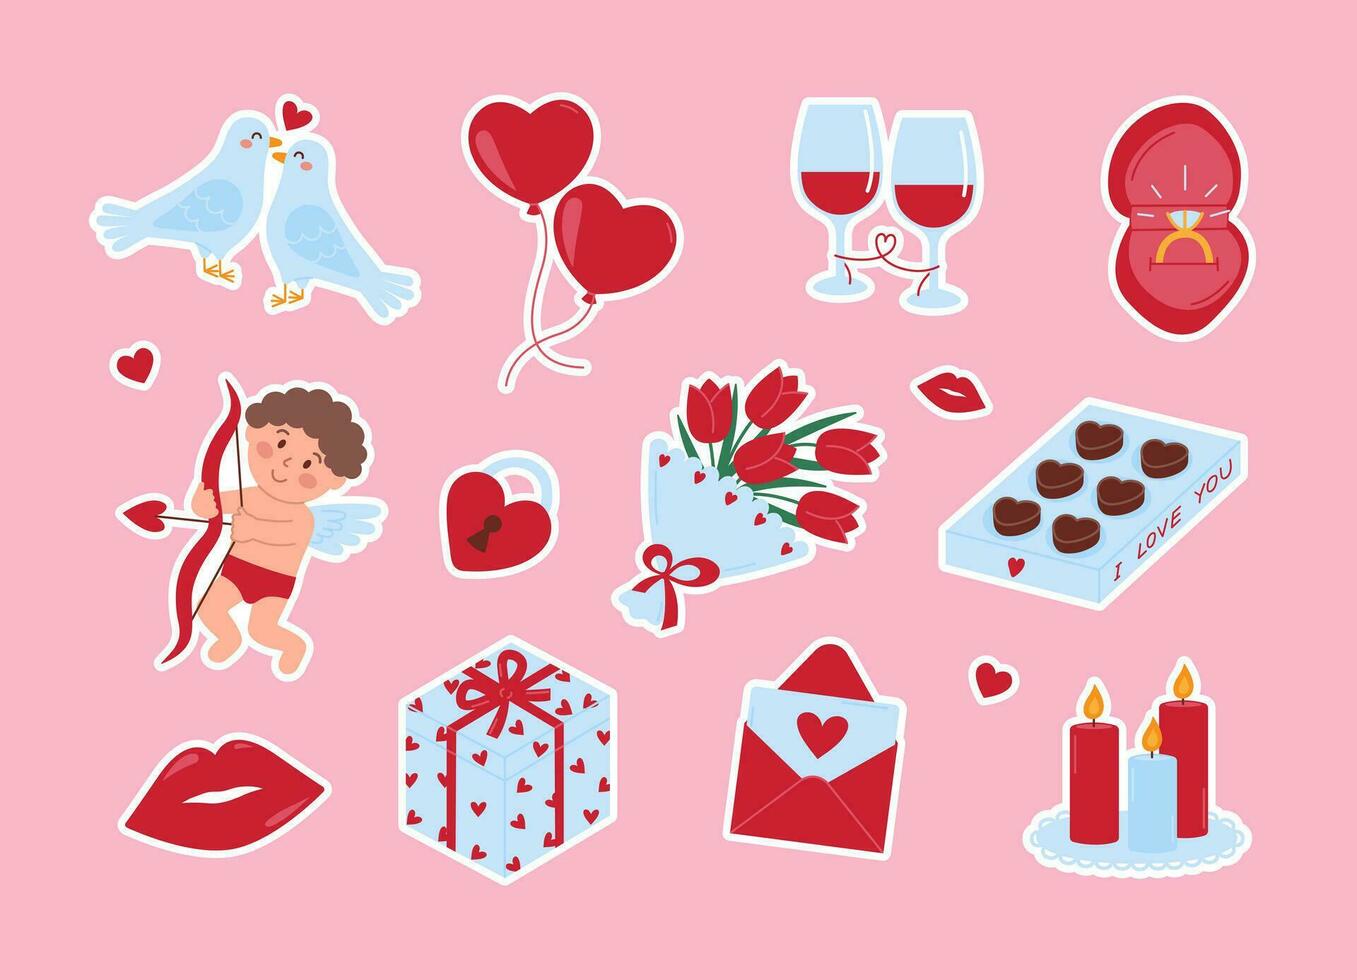 söt romantisk uppsättning av klistermärken för hjärtans dag. duvor, ballonger, glasögon av vin, ringa, Amor, låsa, bukett, godis, mun, gåva, kuvert och ljus. kärlek element. vektor illustration på rosa